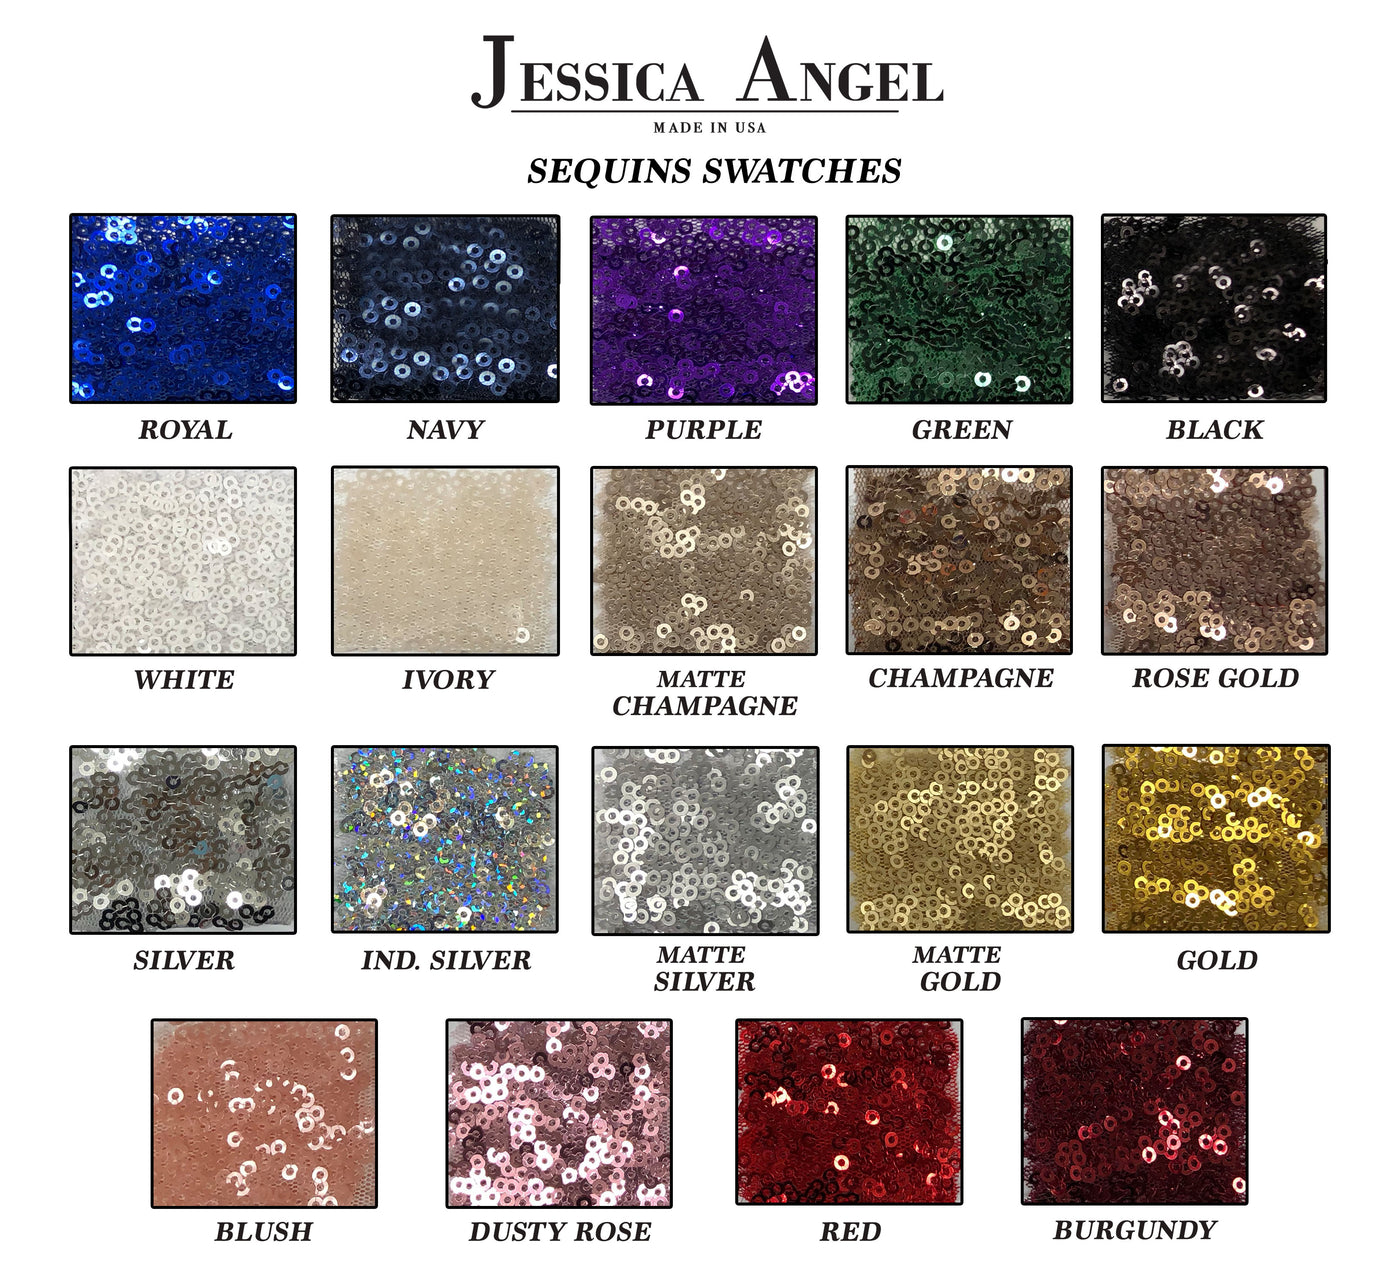 Jessica Angel 640